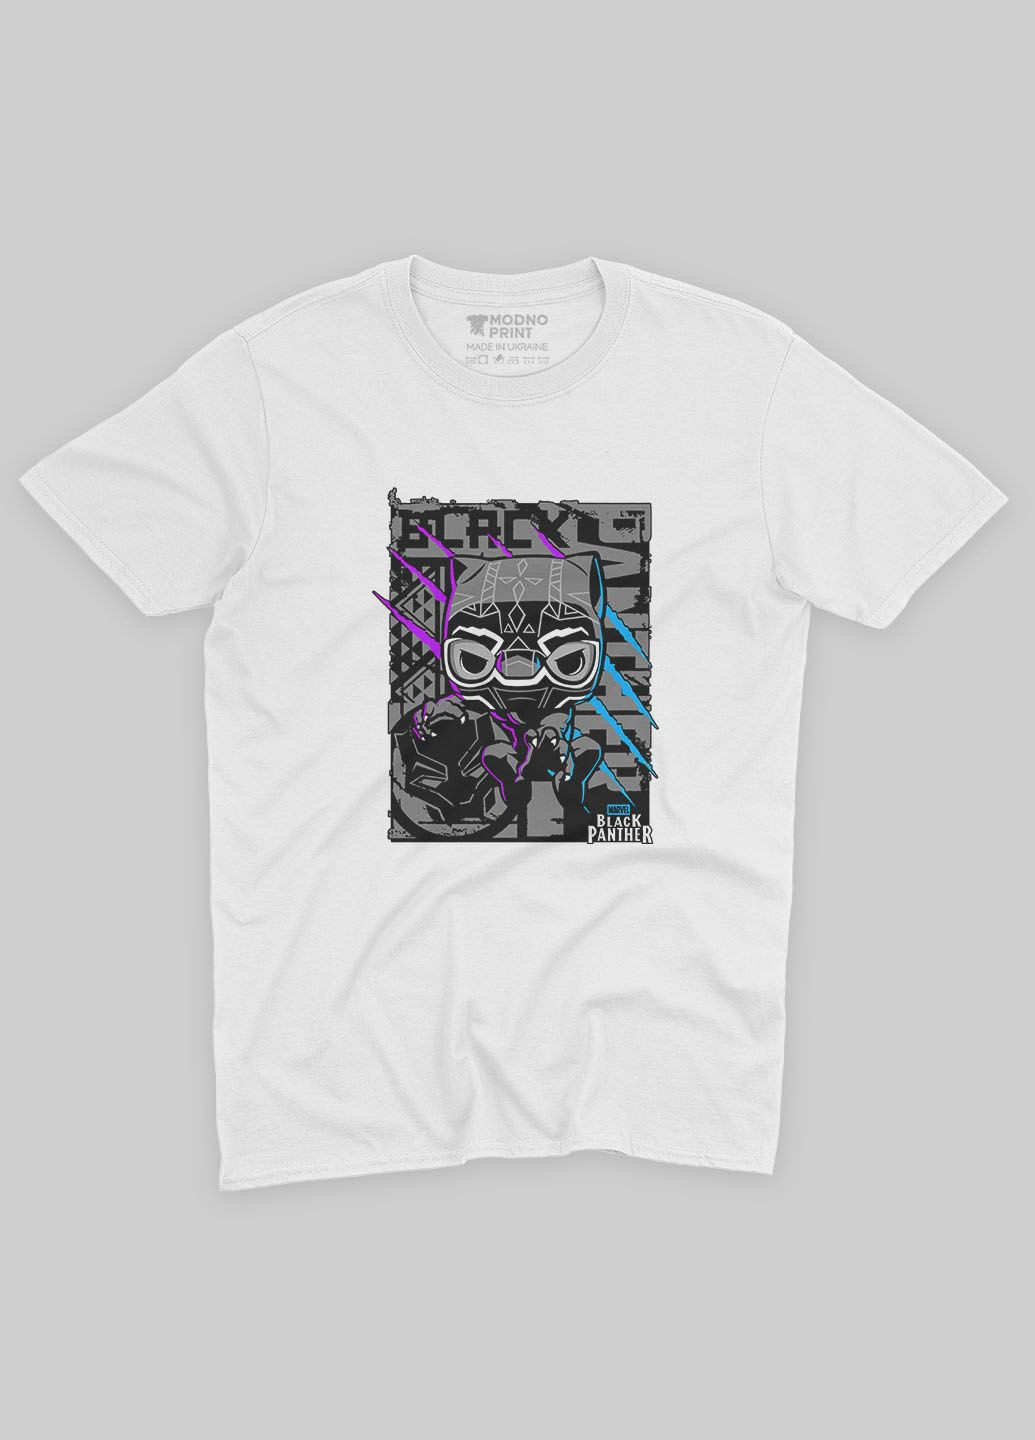 Біла демісезонна футболка для дівчинки з принтом супергероя - чорна пантера (ts001-1-whi-006-027-002-g) Modno